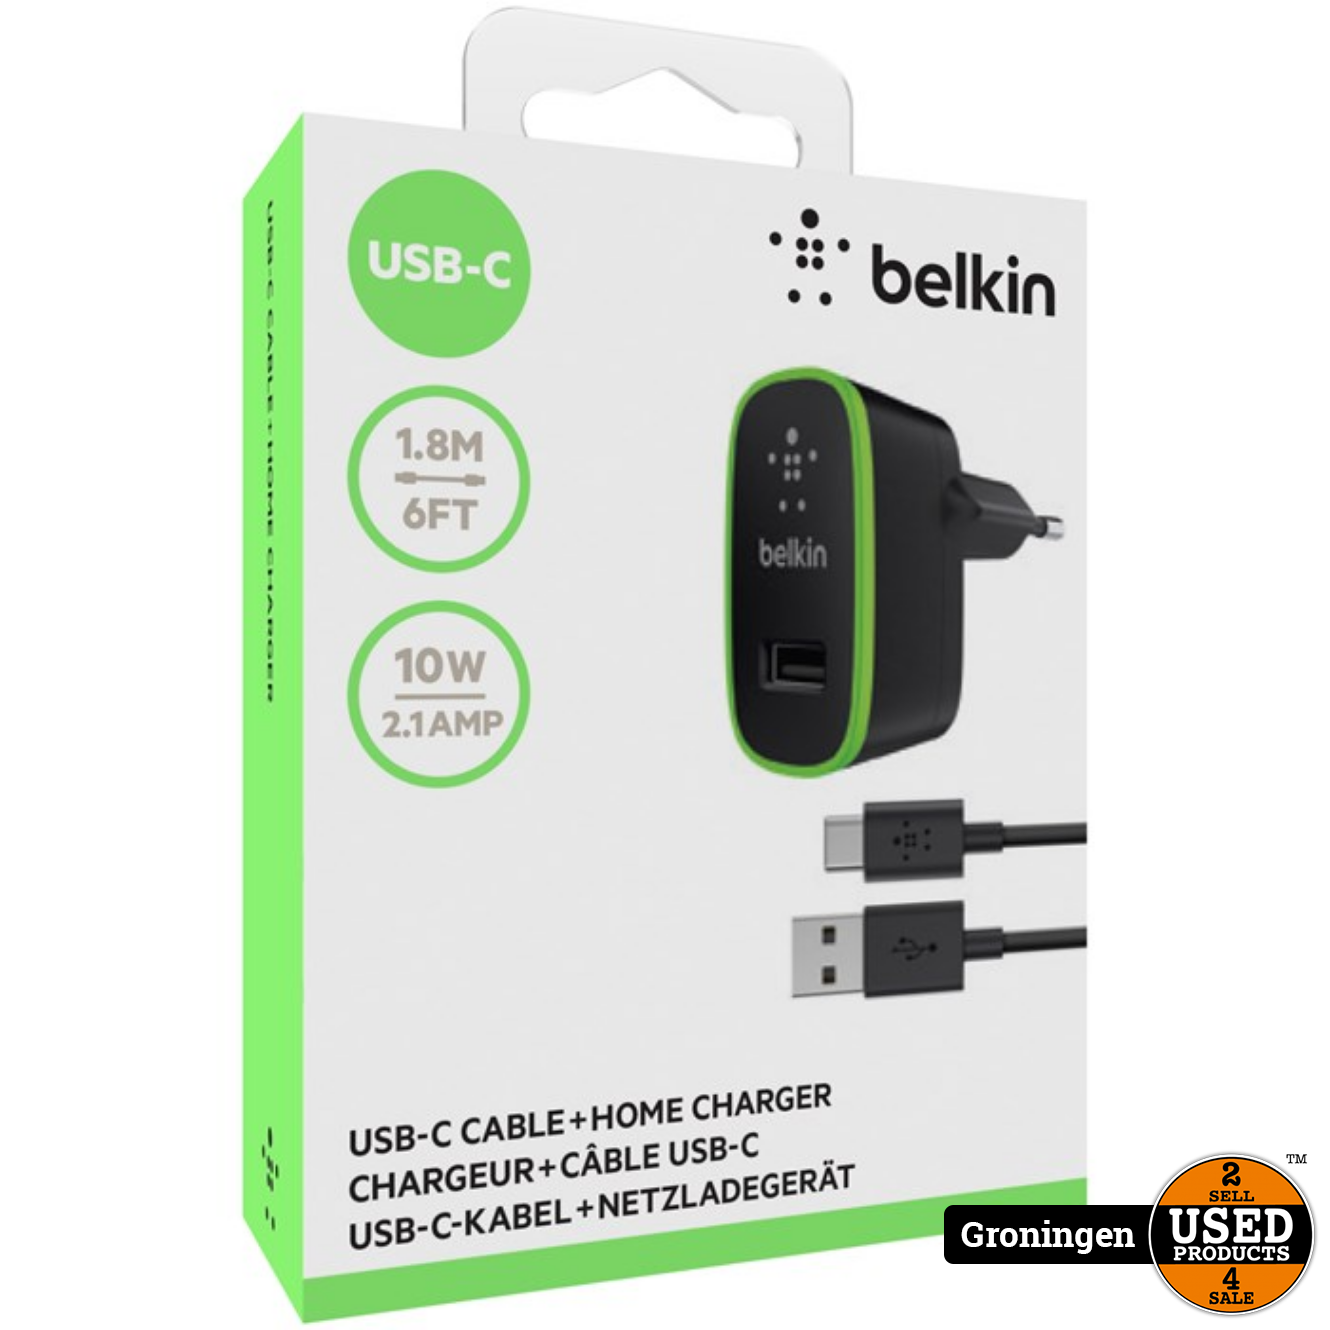 hoofdpijn Om toevlucht te zoeken koper Belkin USB-C/USB-A-kabel met thuislader - Used Products Groningen